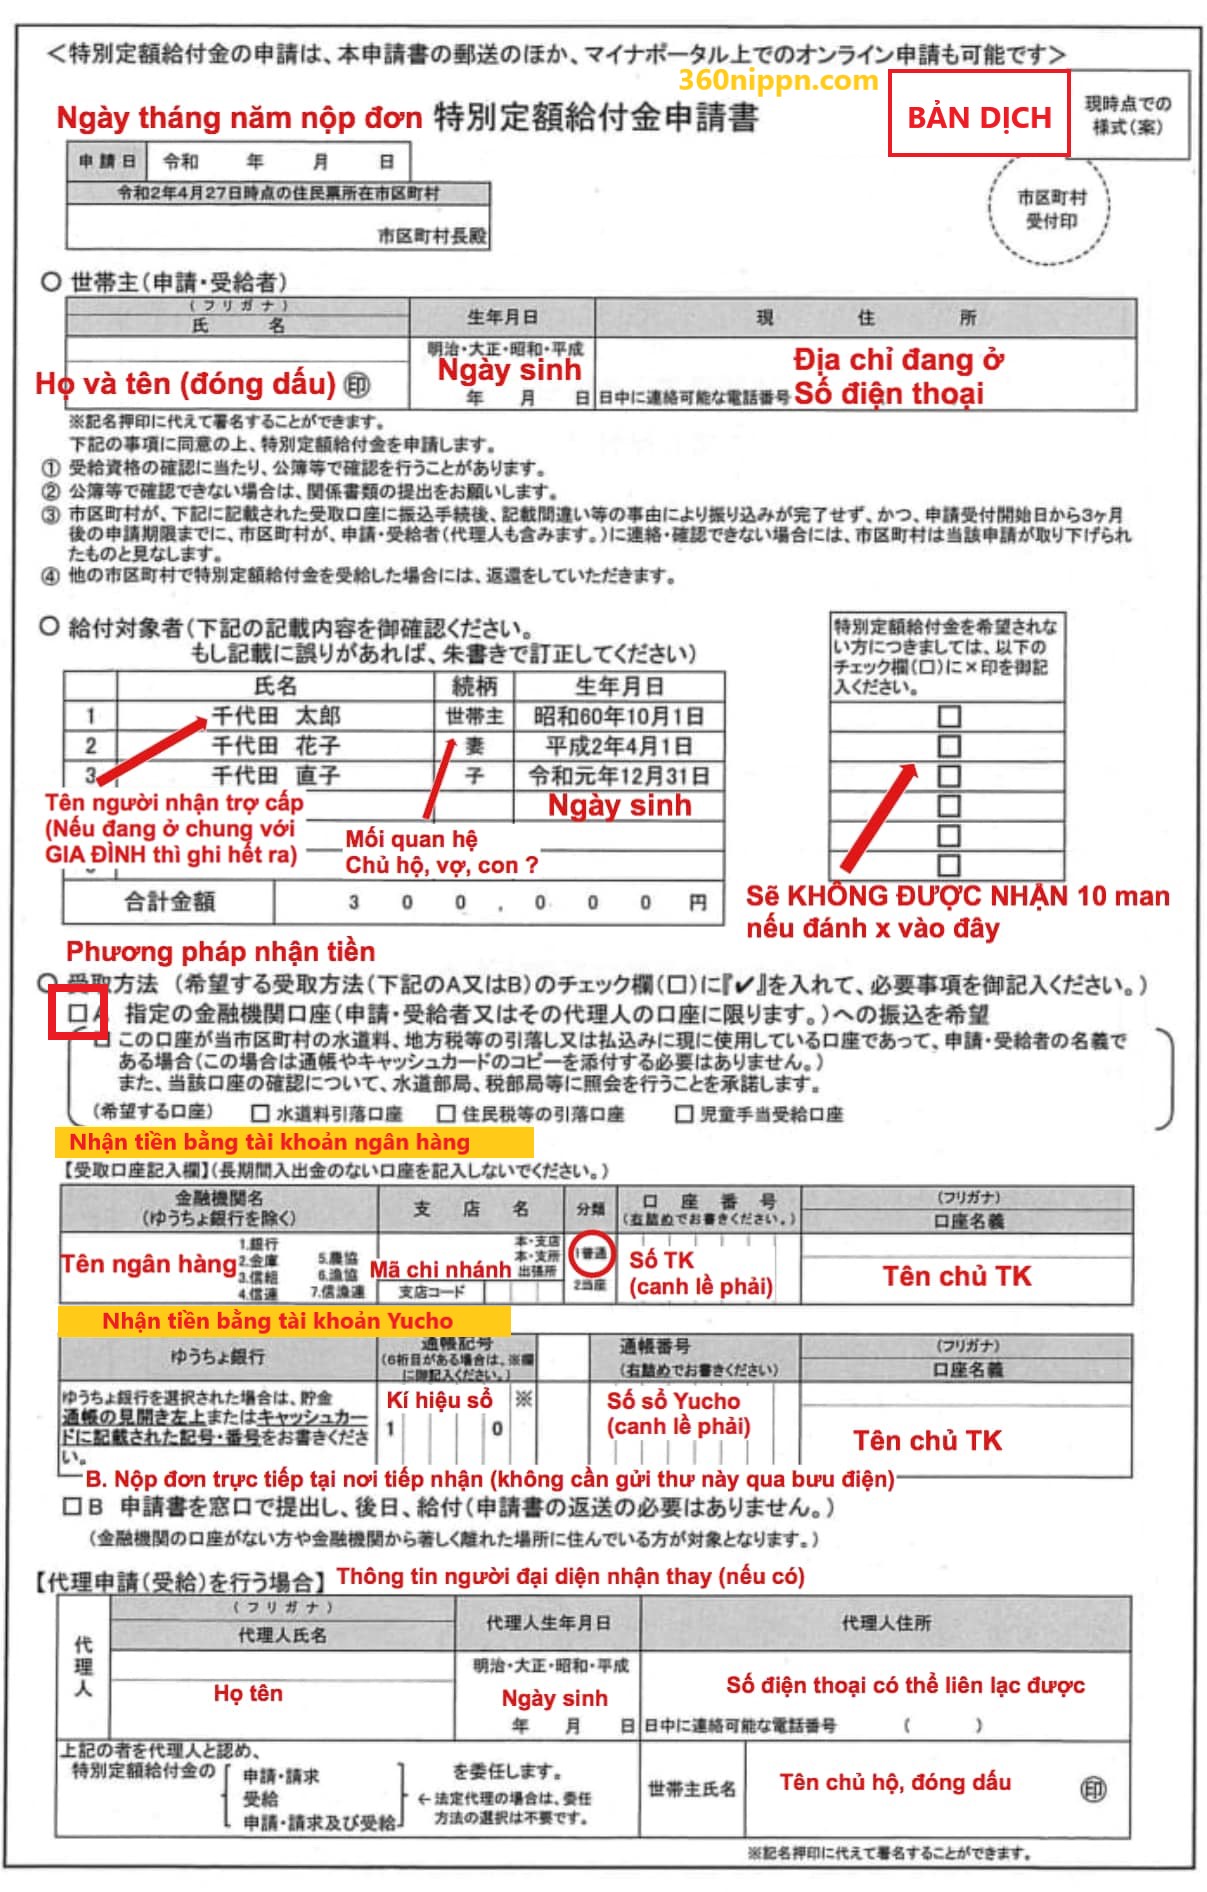 Nếu bạn đang sống tại Nhật và cần tìm hiểu về thủ tục nhận trợ cấp 10 man, hãy xem qua hướng dẫn chi tiết. Bằng việc nắm rõ ràng thông tin cần thiết và điền đầy đủ thông tin vào đơn xin, bạn sẽ có cơ hội nhận được hỗ trợ tài chính từ chính phủ Nhật Bản.